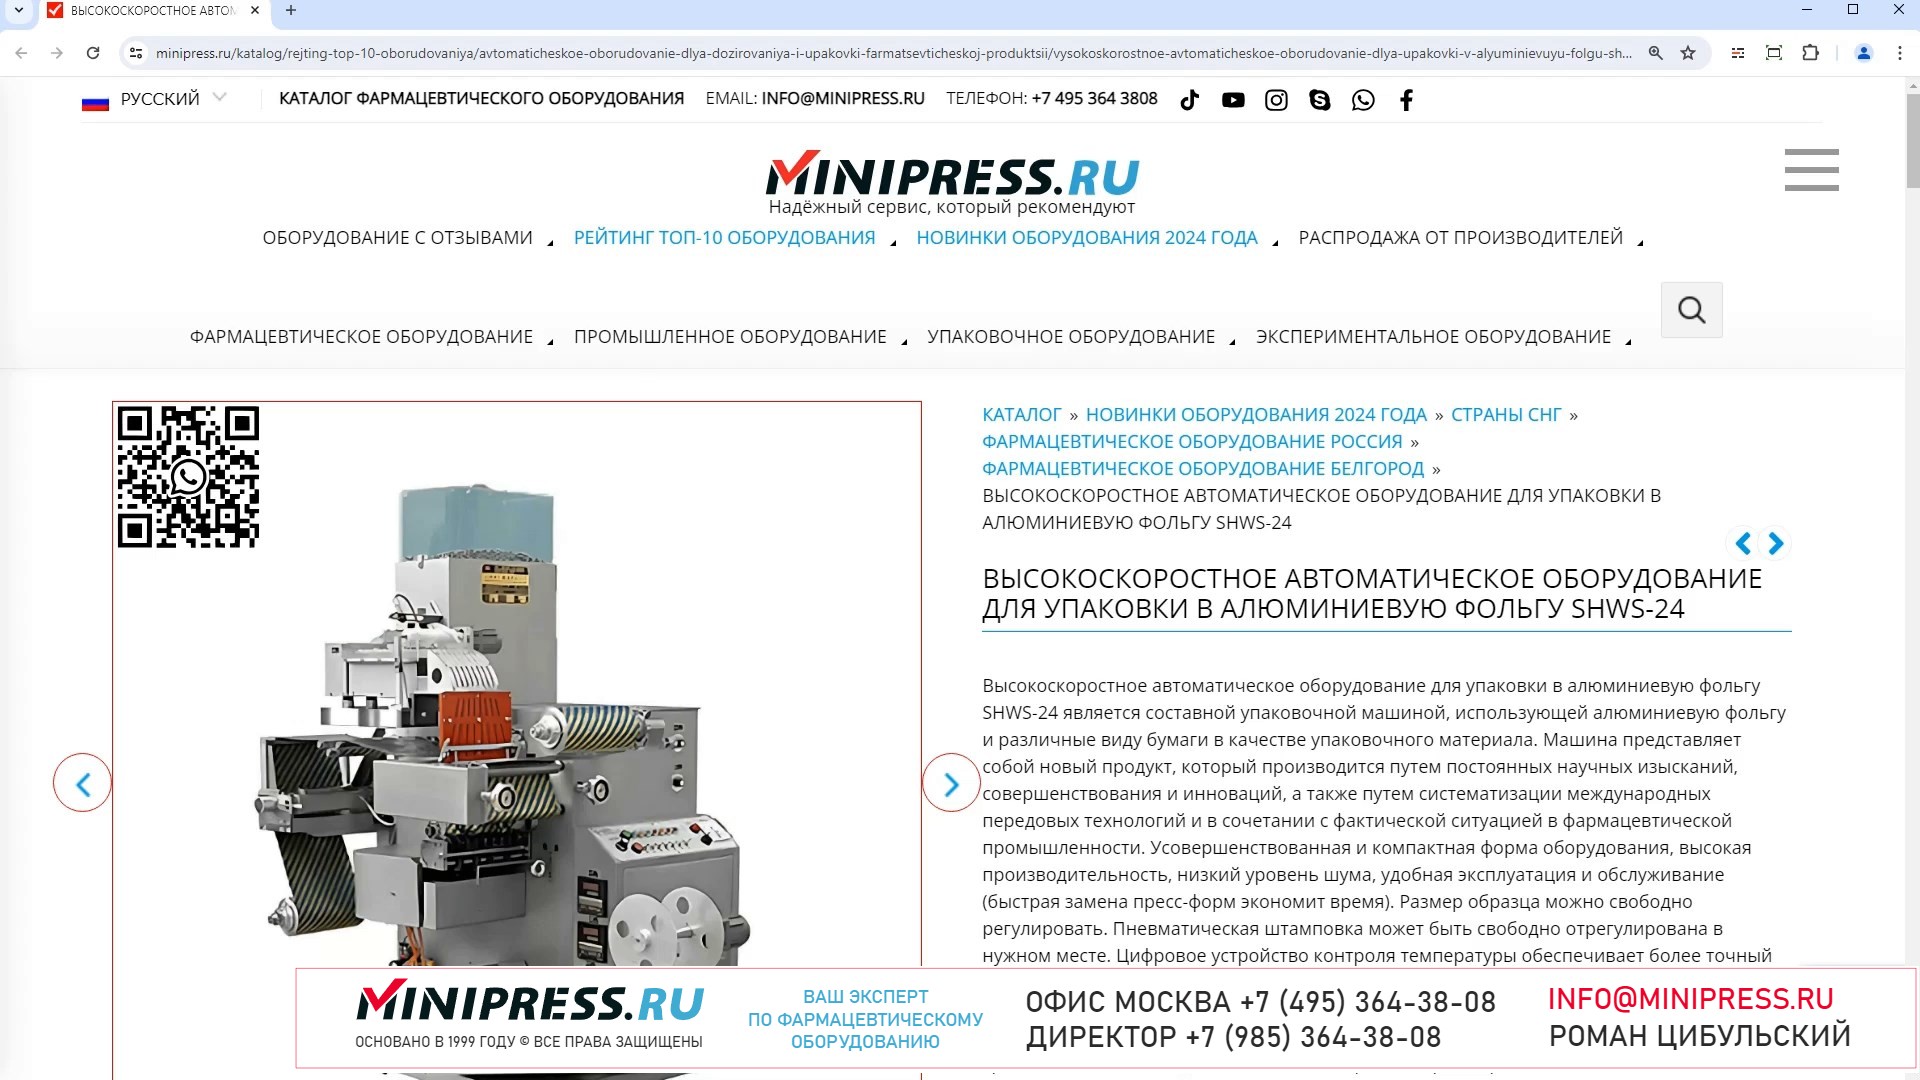 Minipress.ru Высокоскоростное автоматическое оборудование для упаковки в алюминиевую фольгу SHWS-24